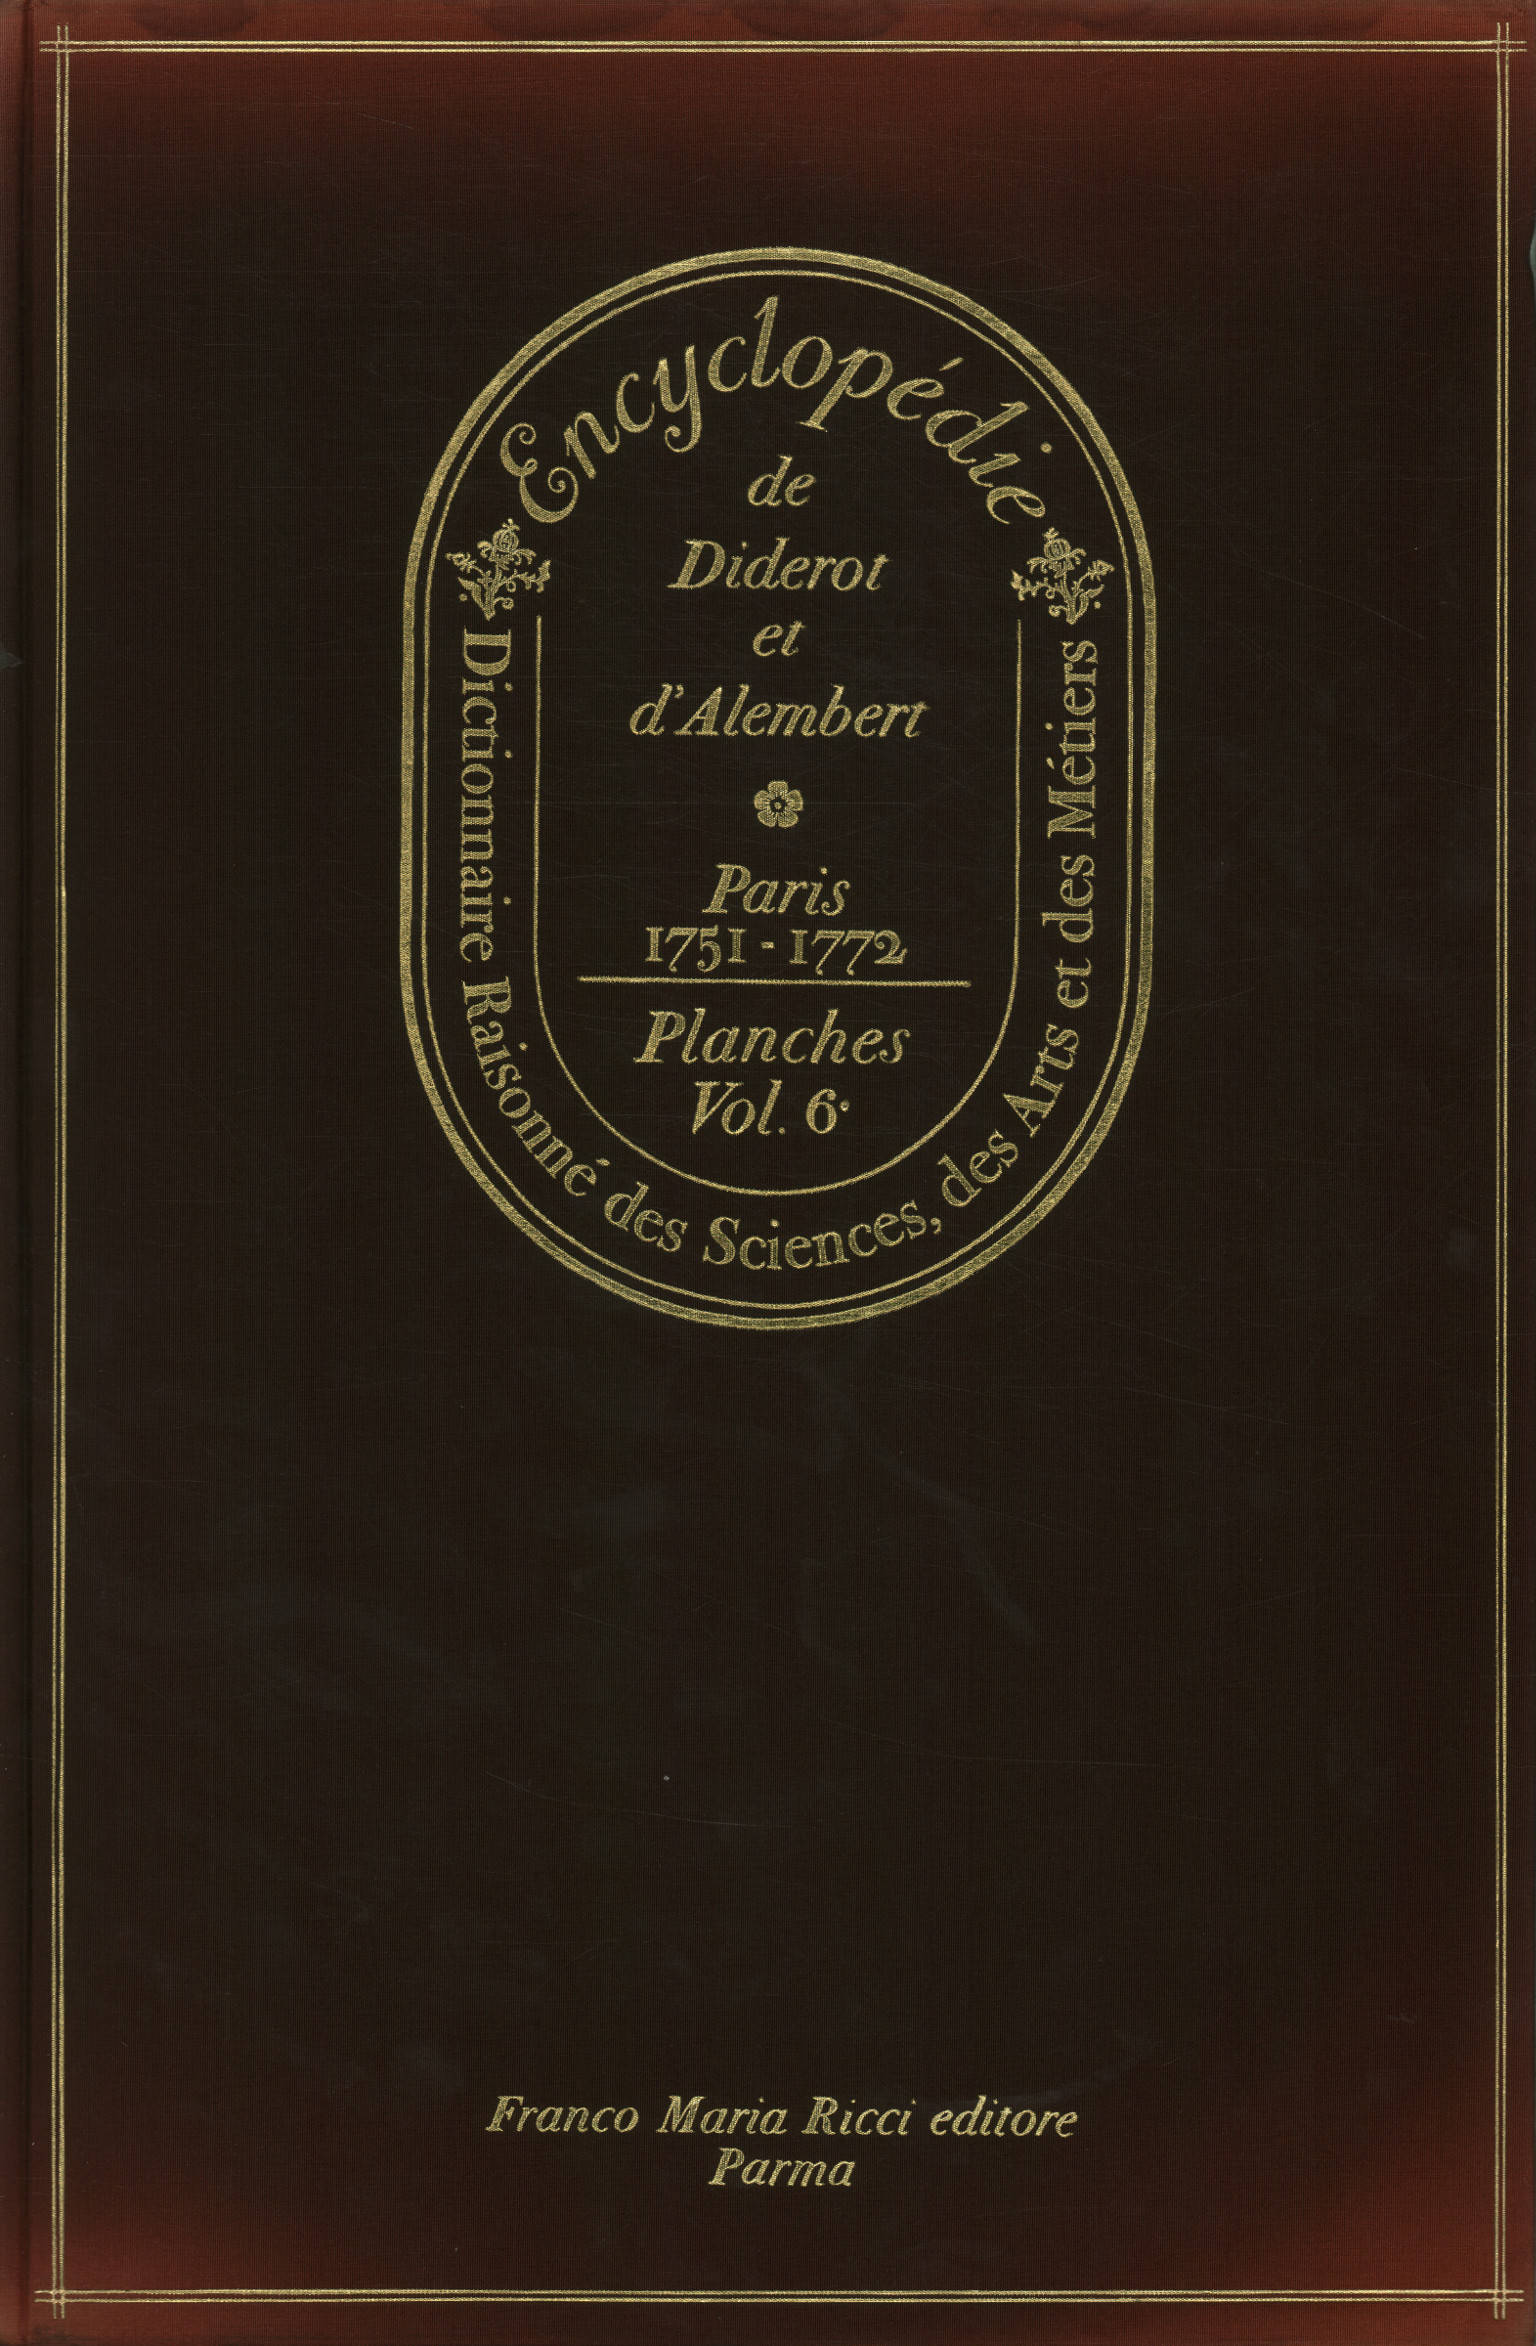 Encyclopédie de Diderot et d'apostrop